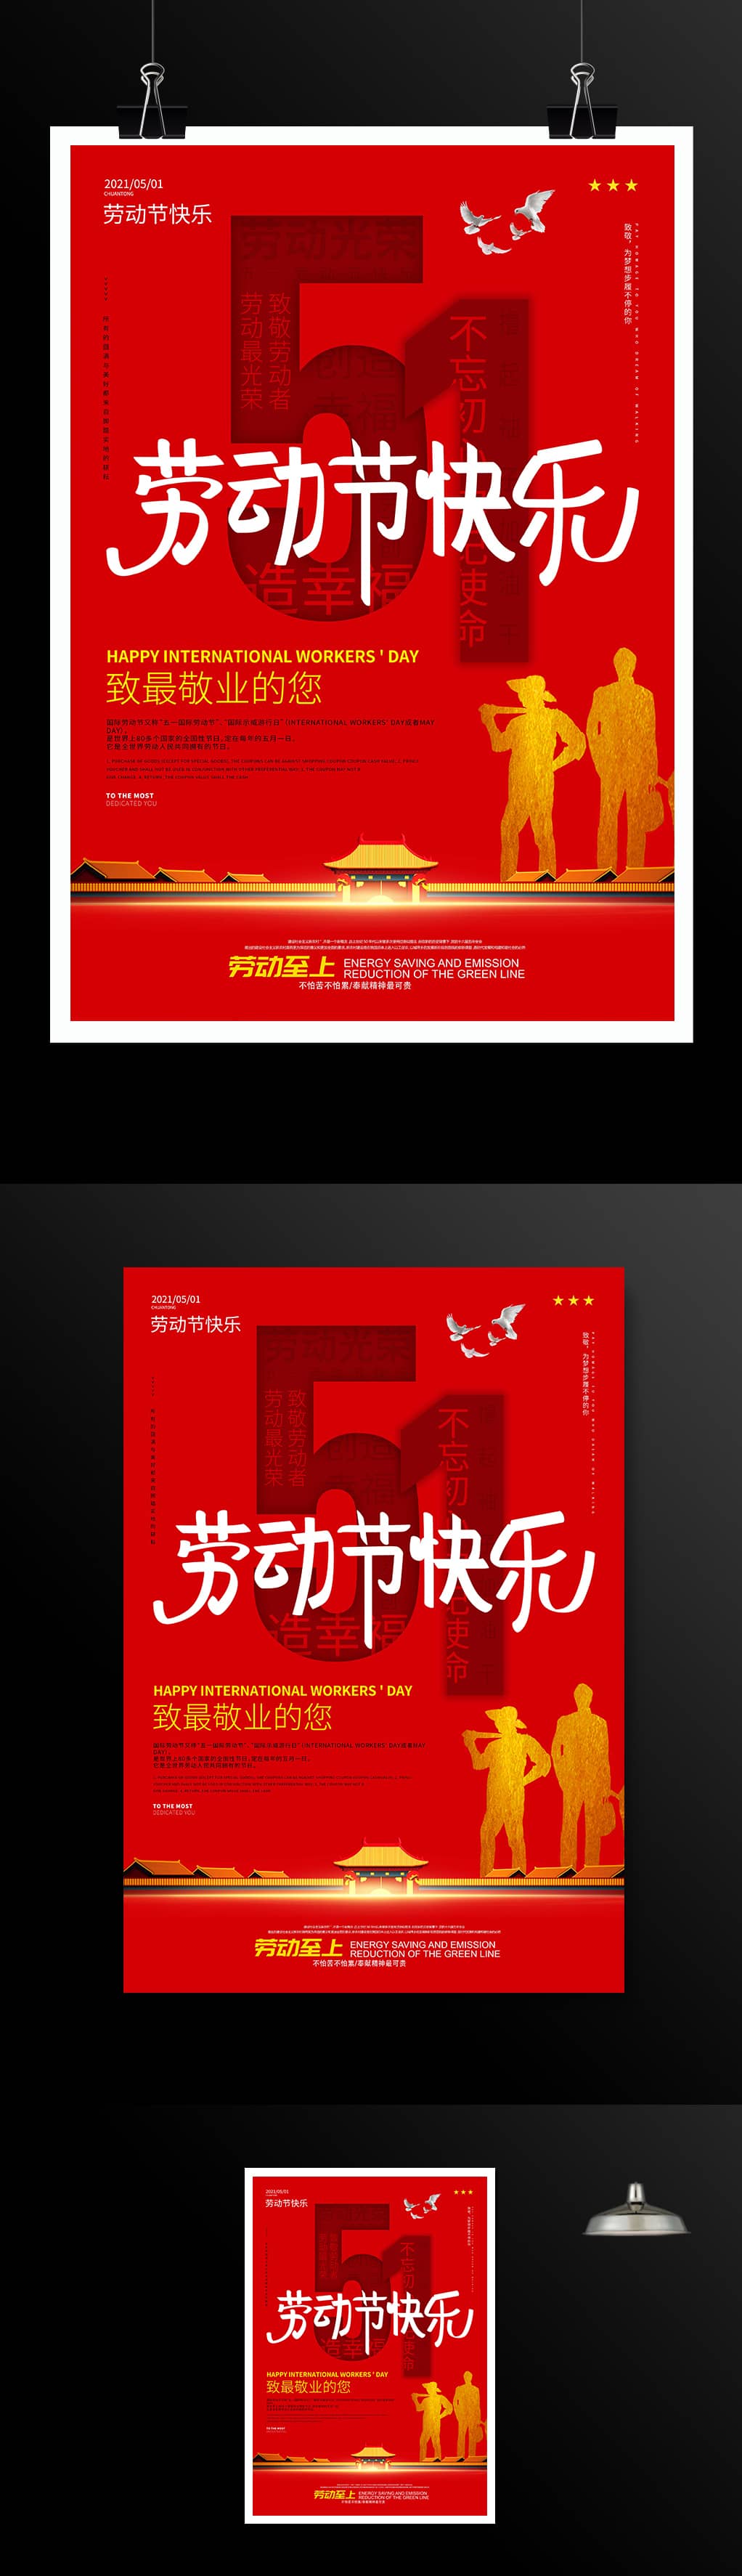 51劳动节快乐宣传海报